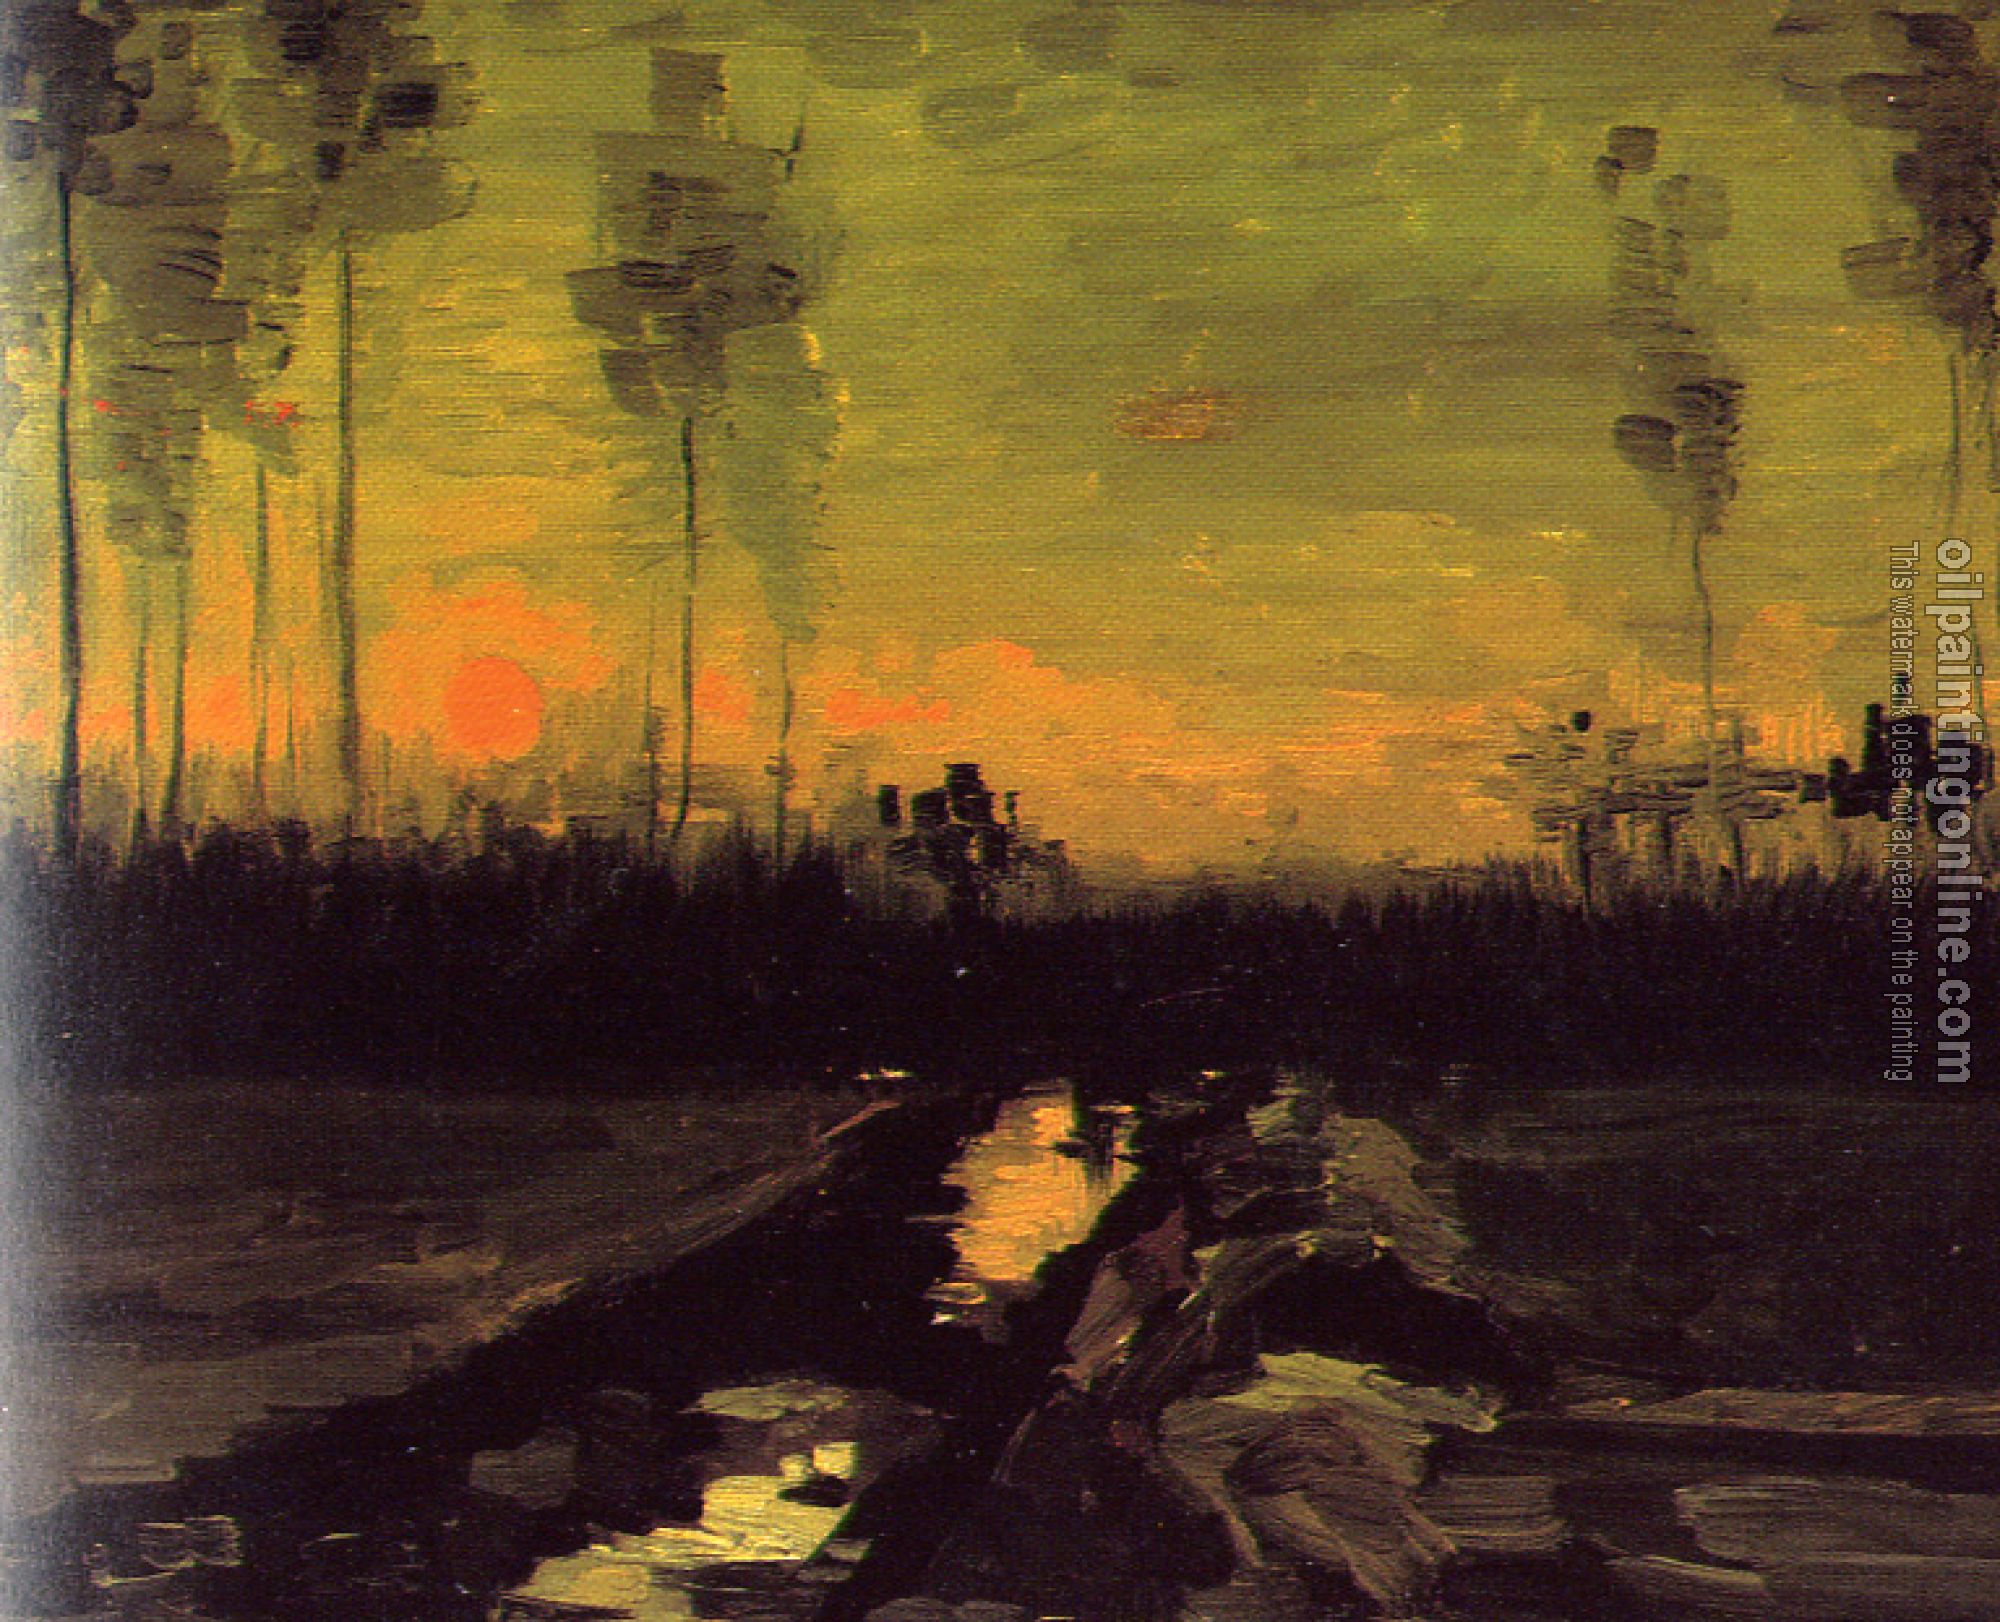 Gogh, Vincent van - Landscape with Sunset